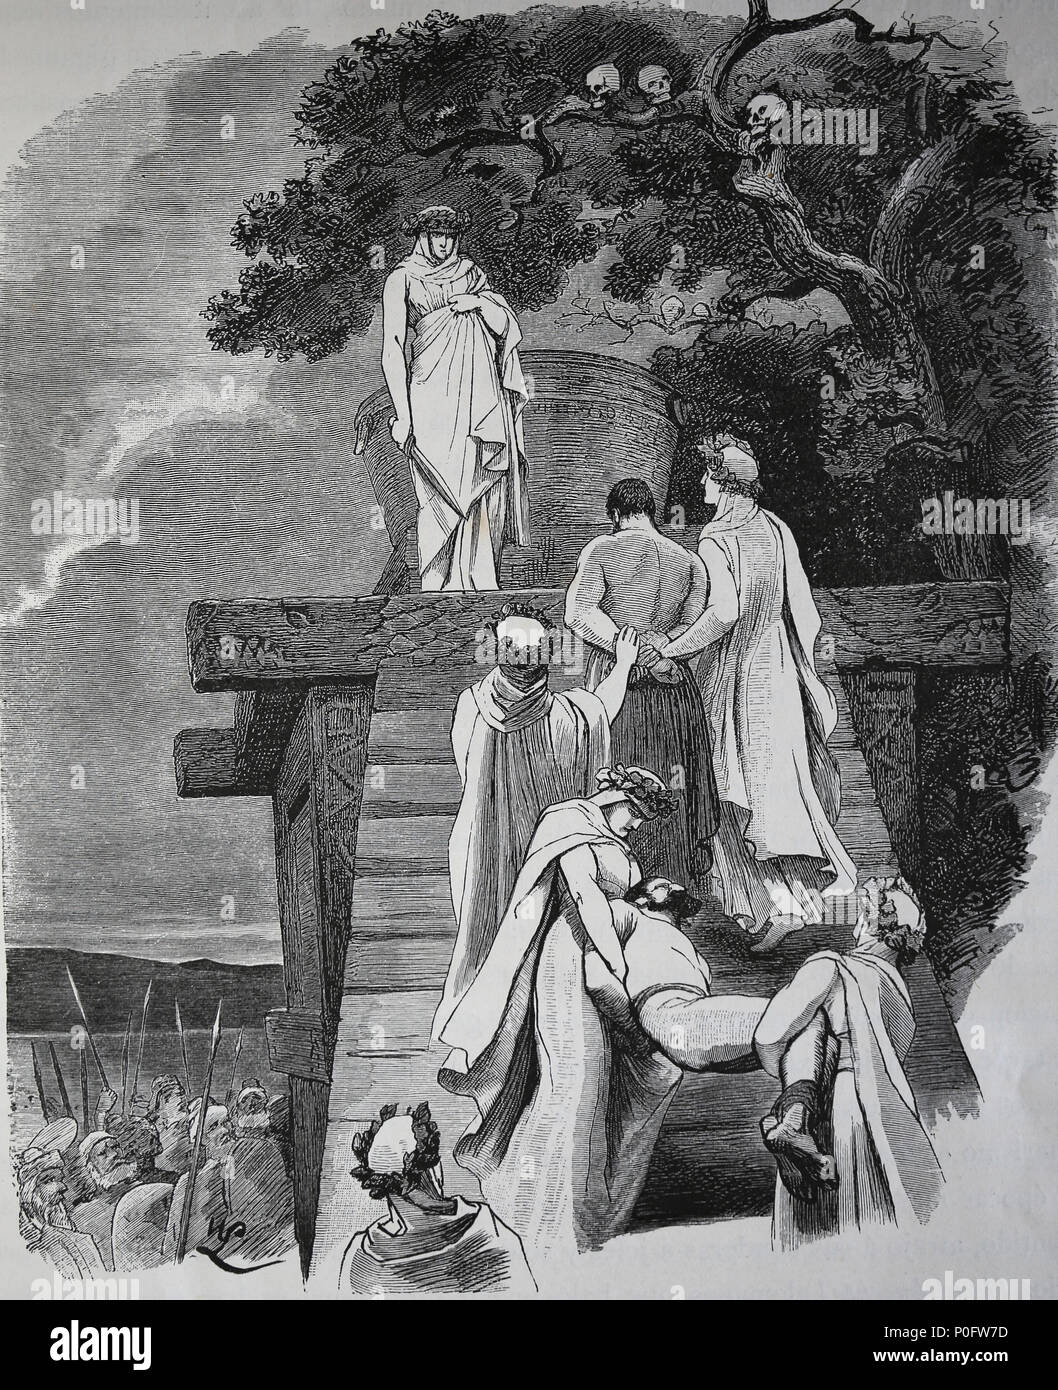 Le sacrifice humain dans l'ancienne Allemagne. Gravure, 1882 de "Germania". Banque D'Images